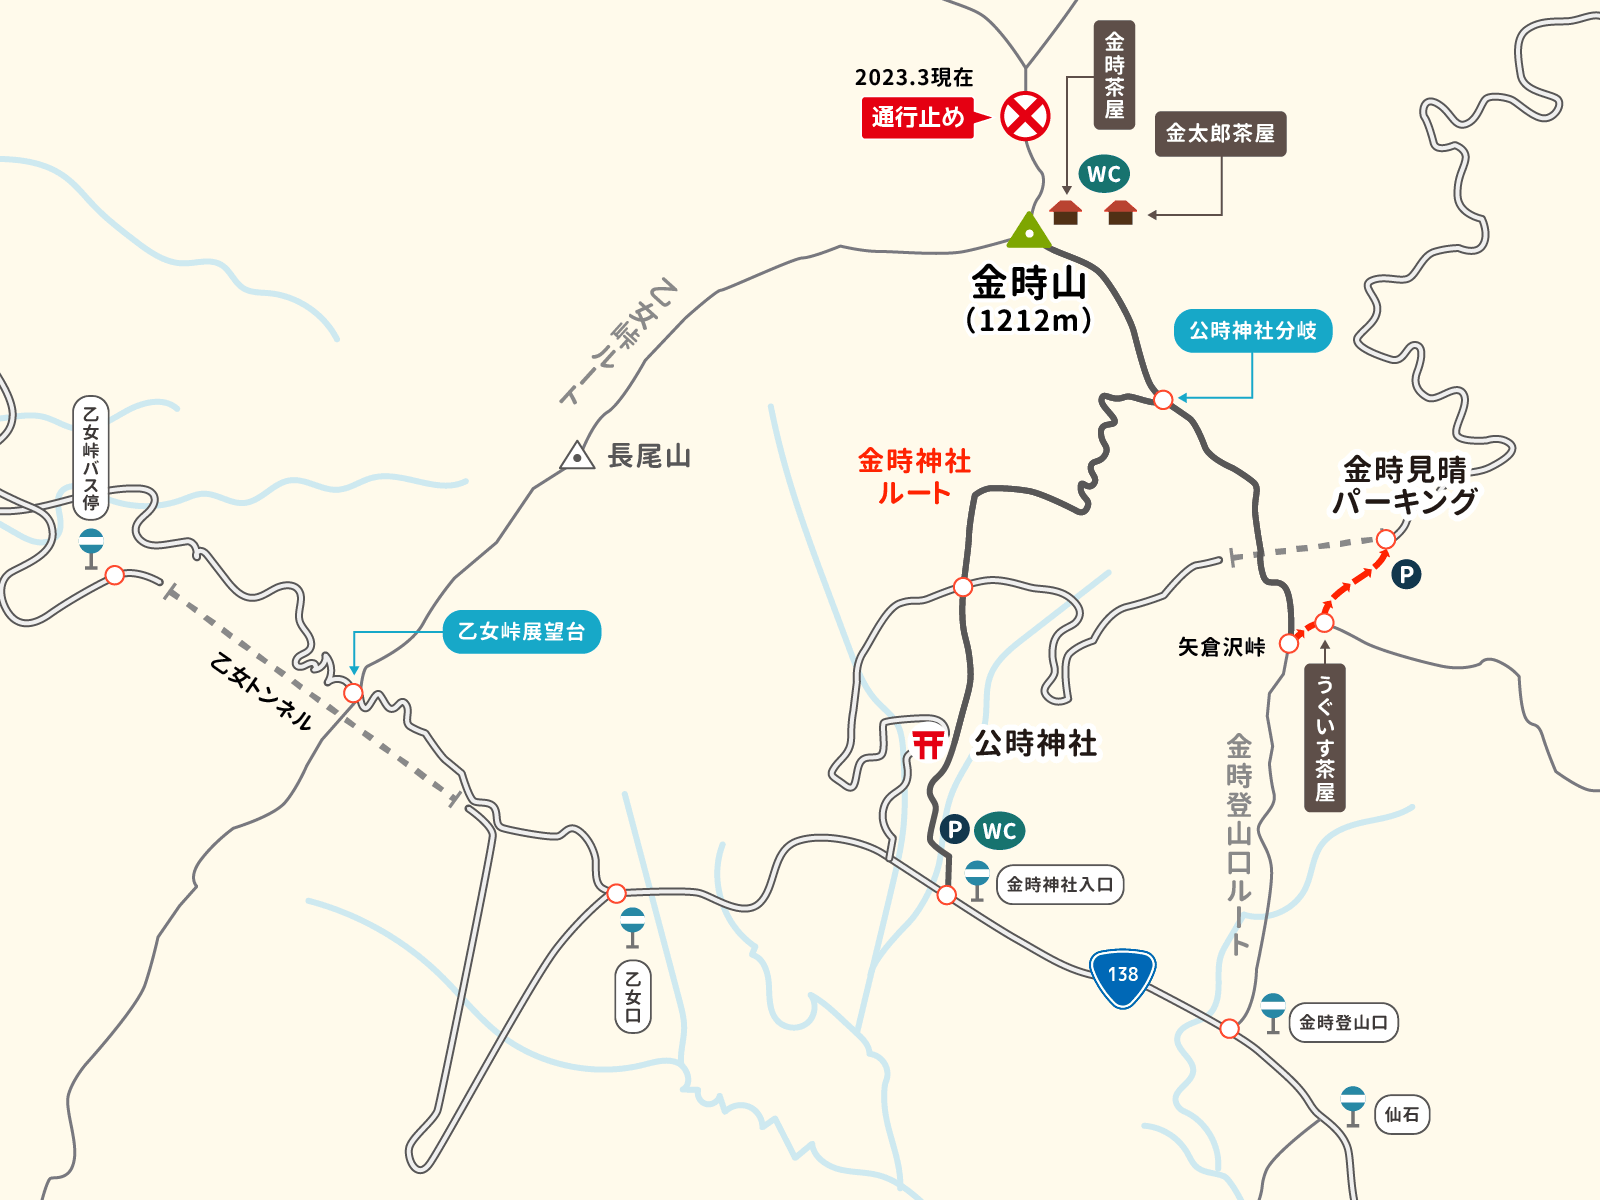 矢倉沢峠から金時見晴パーキングへのイラストマップ
